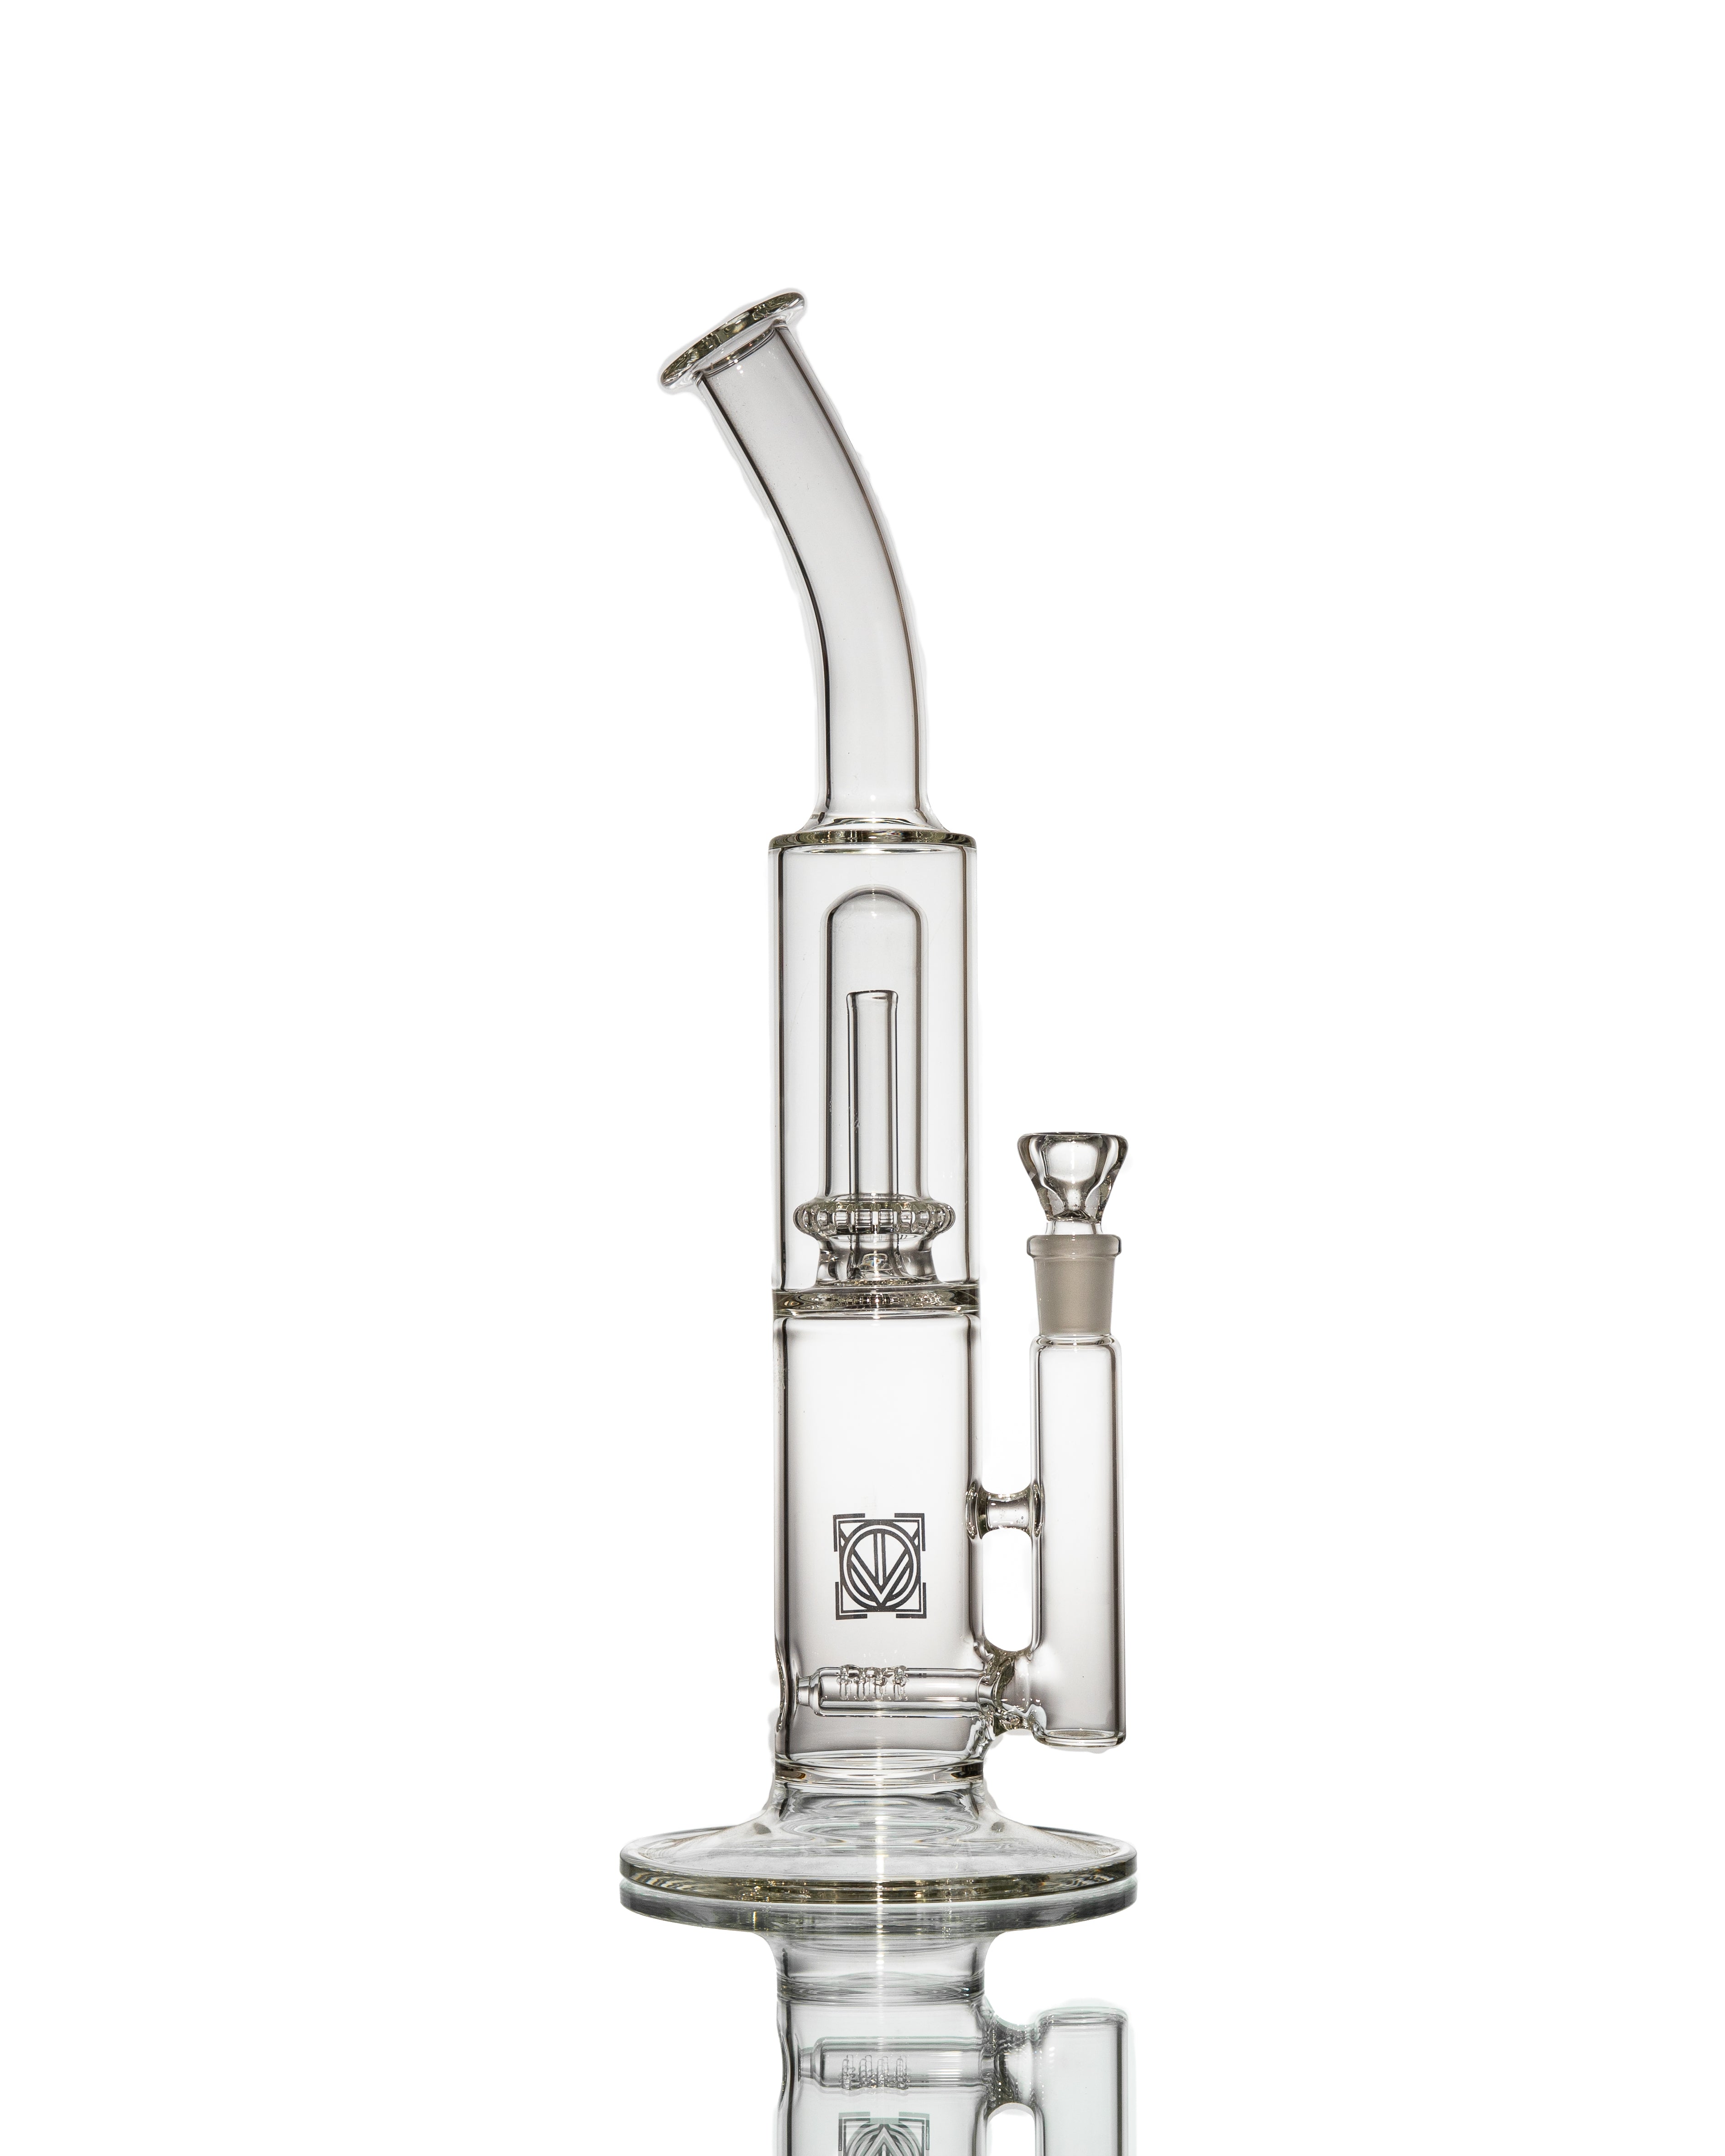 Licit Glass - "Mighty Fine Smoker Jr." Bent Neck Bubbler